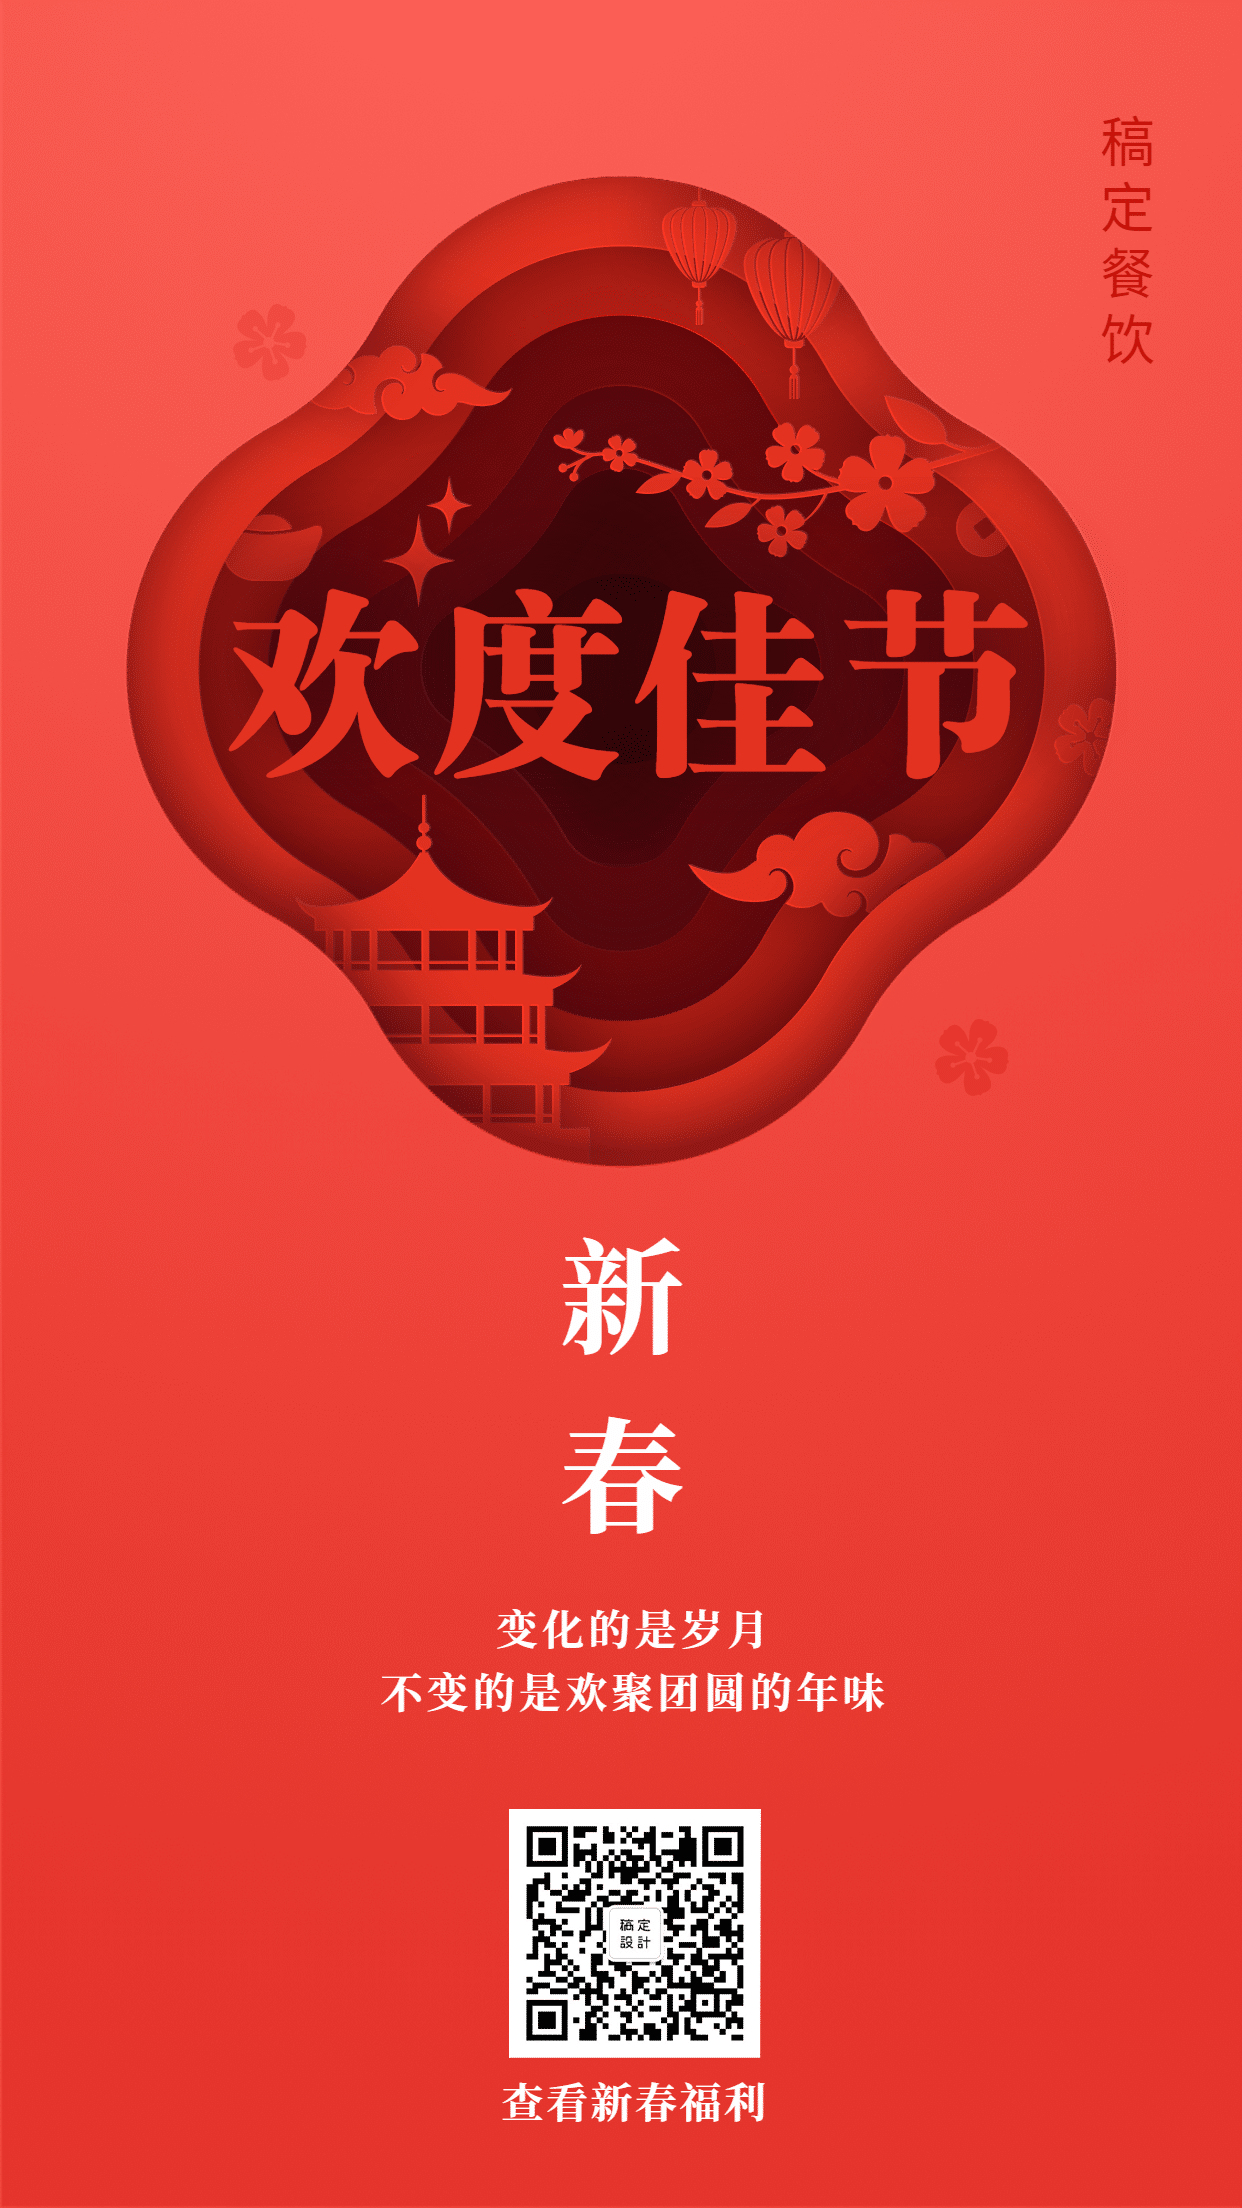 春节新年喜庆祝福手机海报预览效果